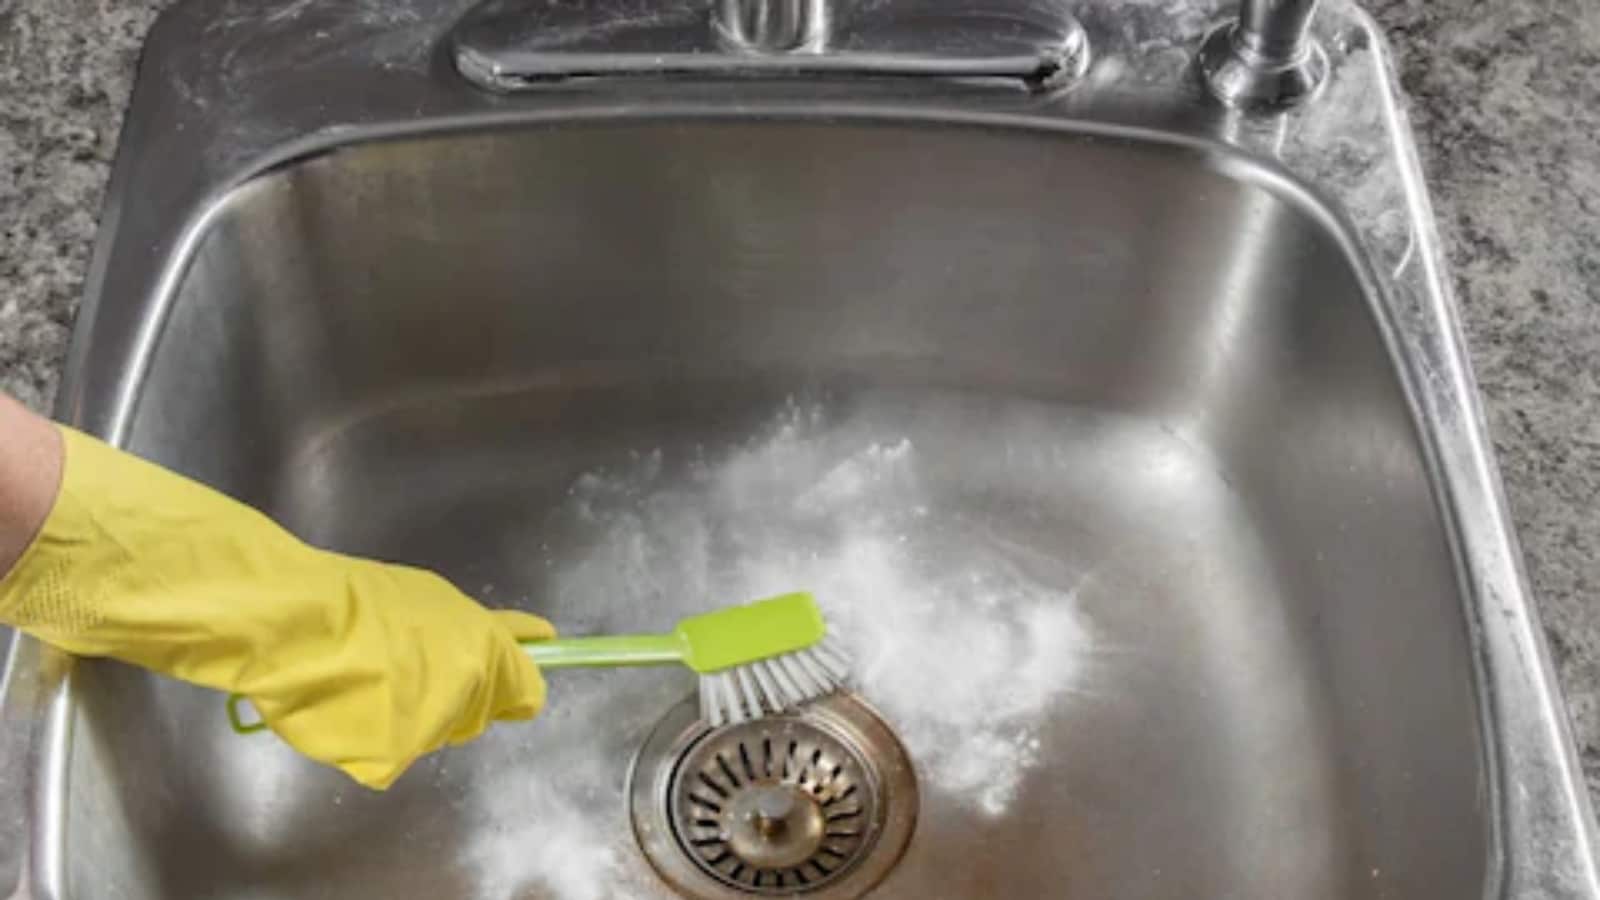 clogged kitchen sink hack